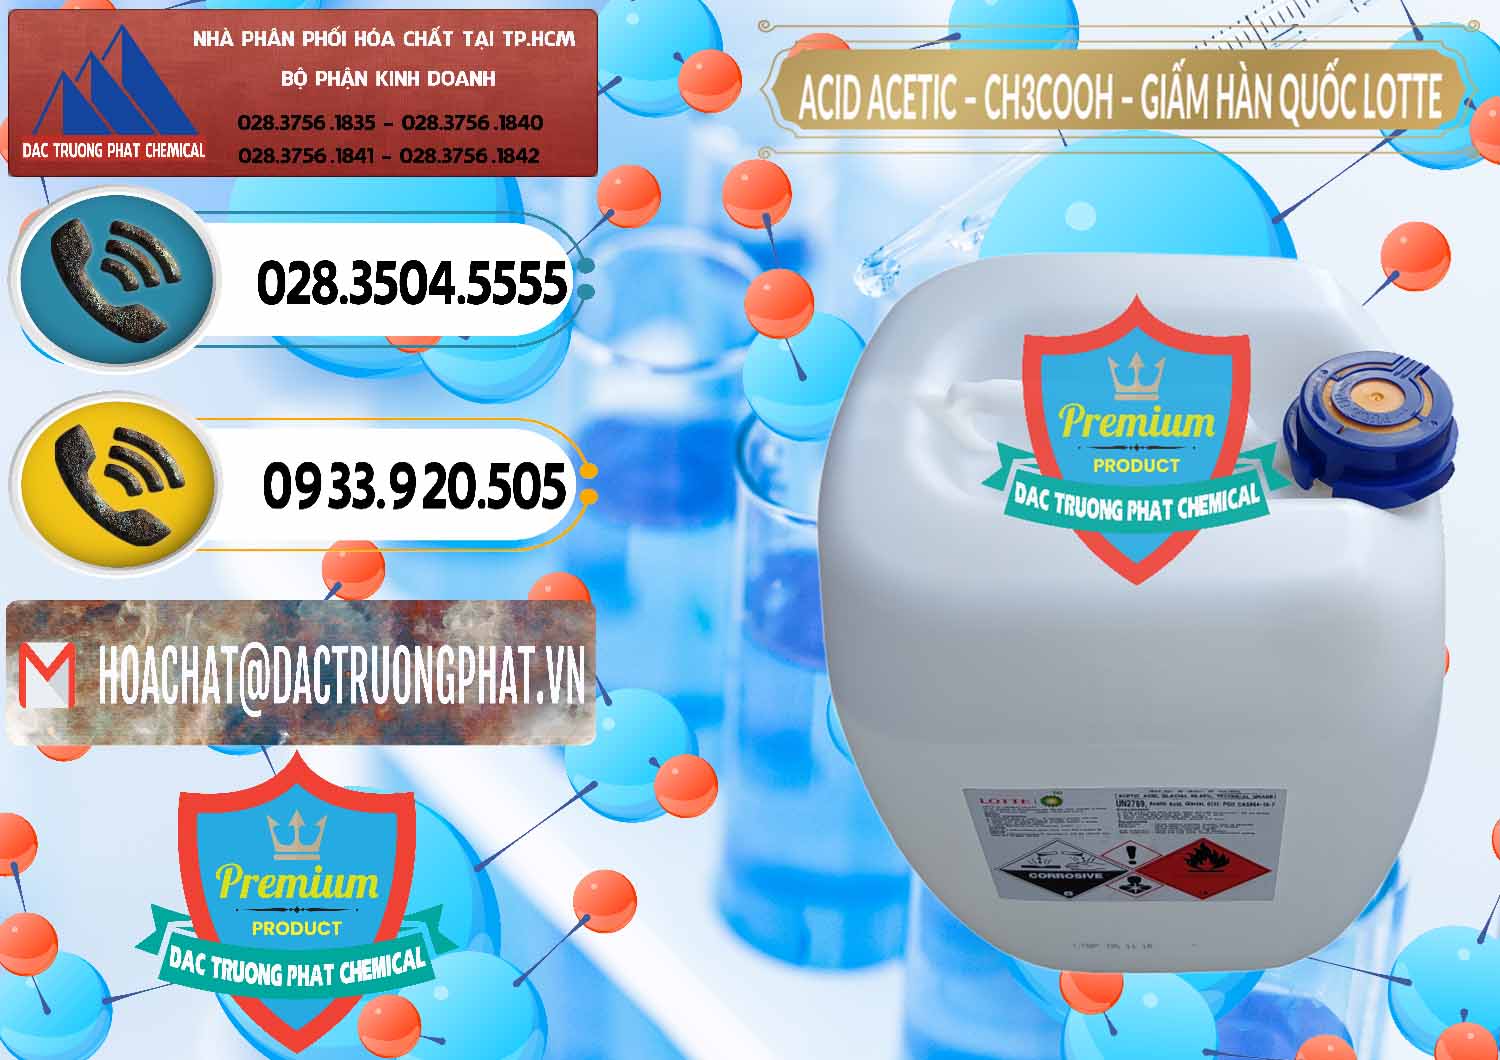 Chuyên bán và phân phối Acetic Acid – Axit Acetic Hàn Quốc Lotte Korea - 0002 - Công ty phân phối & cung cấp hóa chất tại TP.HCM - hoachatdetnhuom.vn